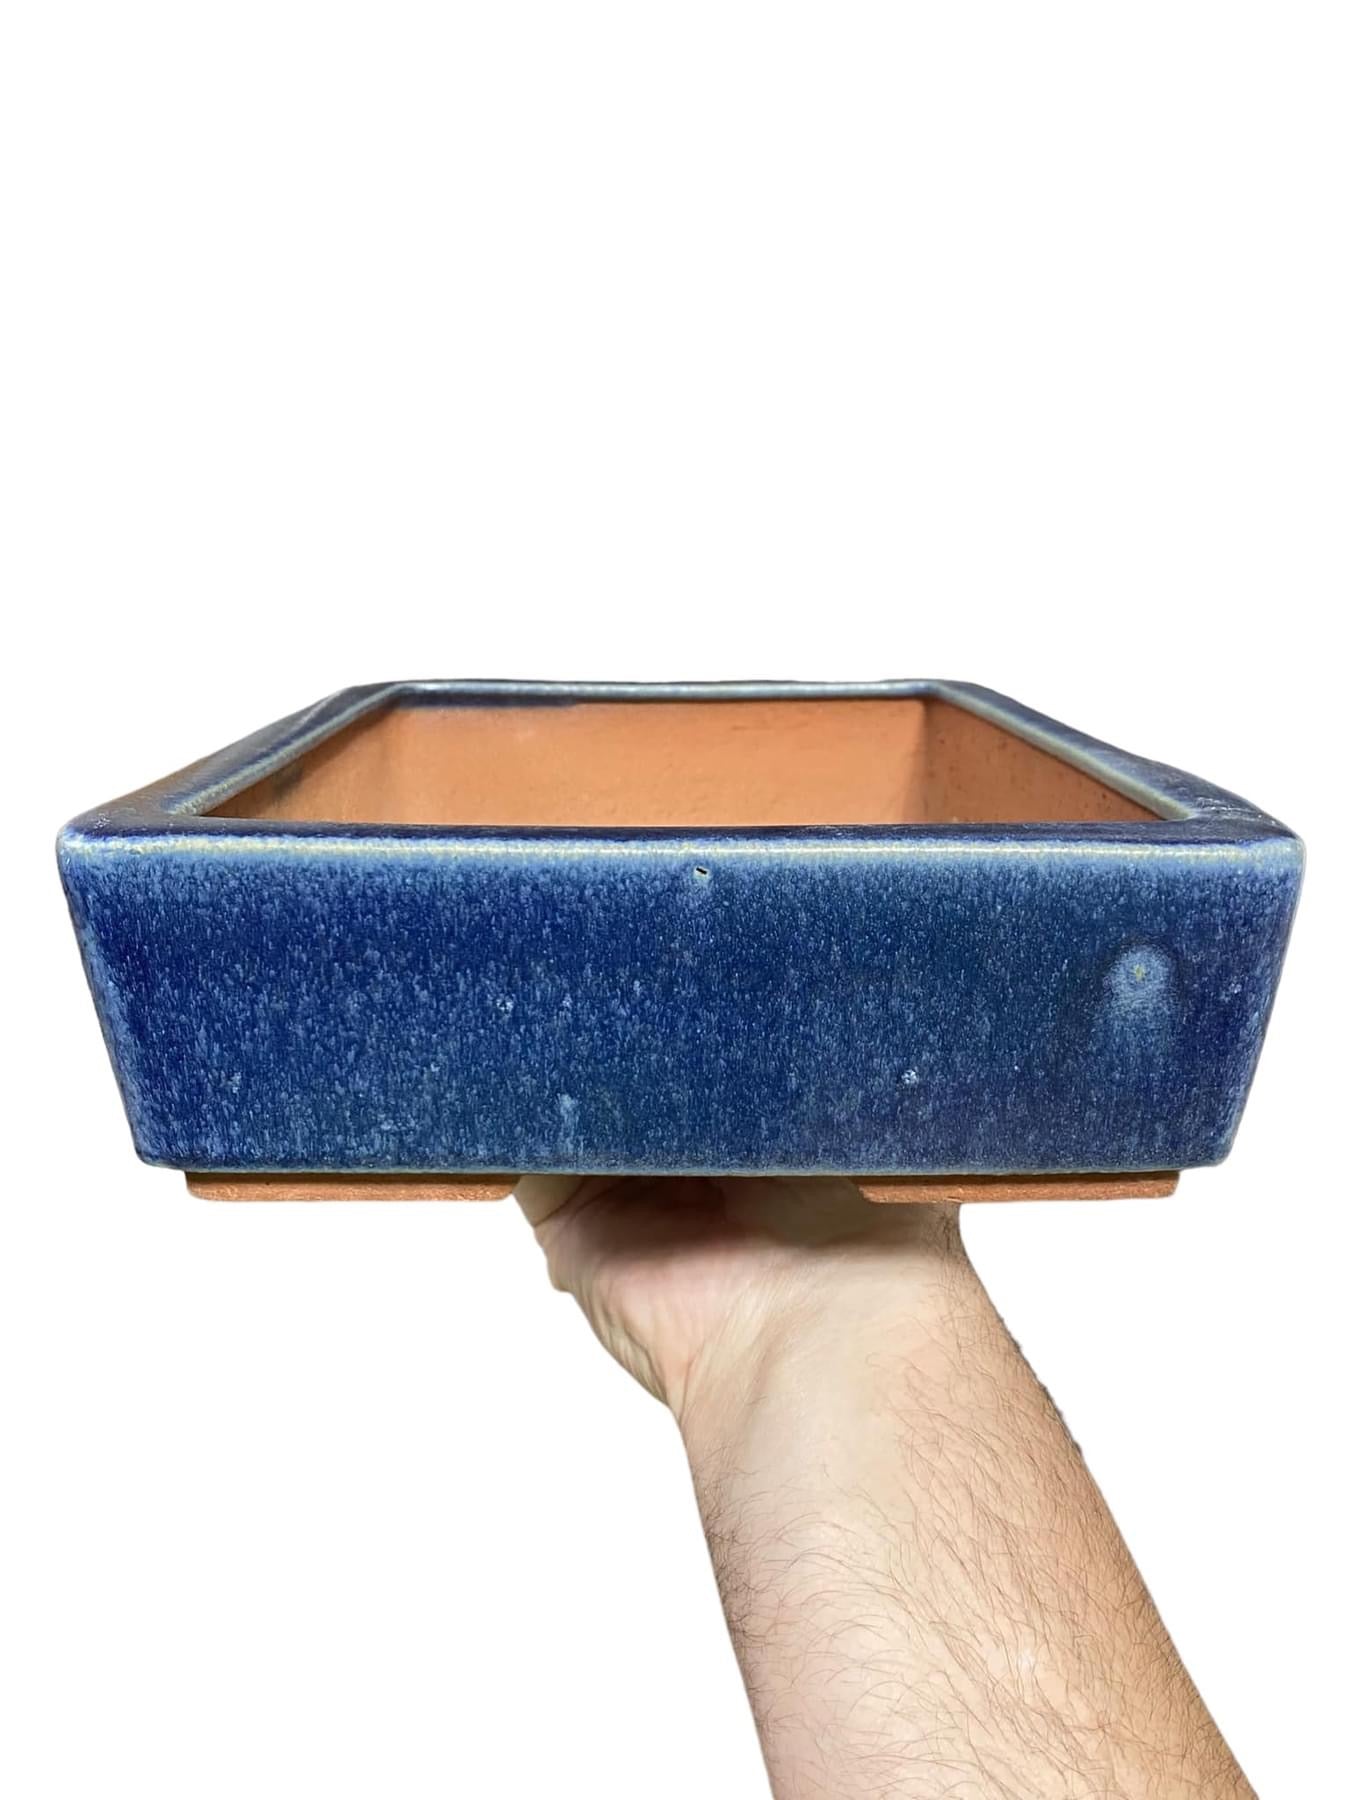 Yozan - 12” Blue Glazed Rectangle Bonsai Pot